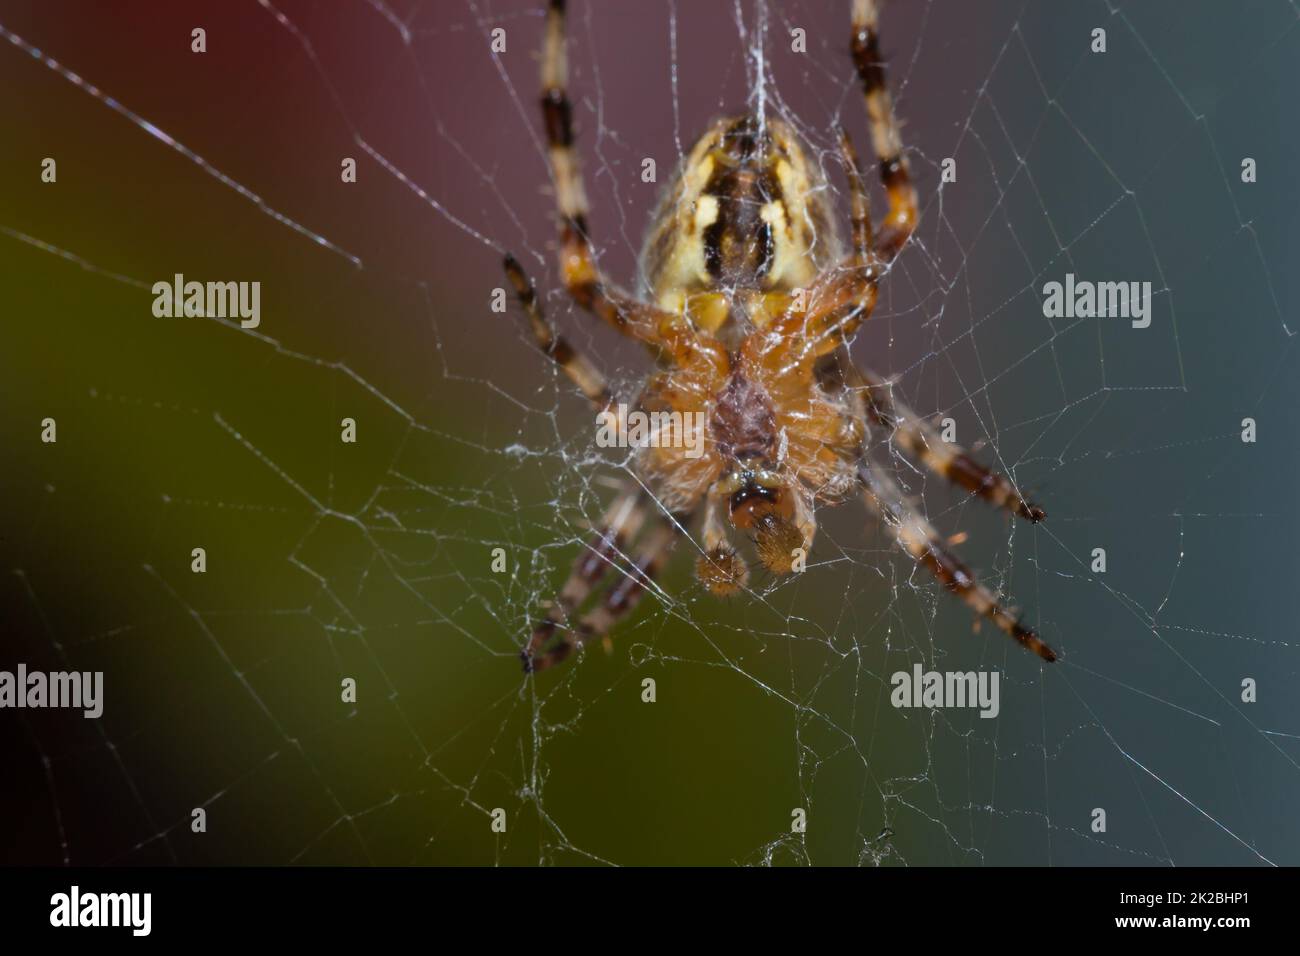 La parte inferior de la araña, alrededor de ella, es una tela Foto de stock